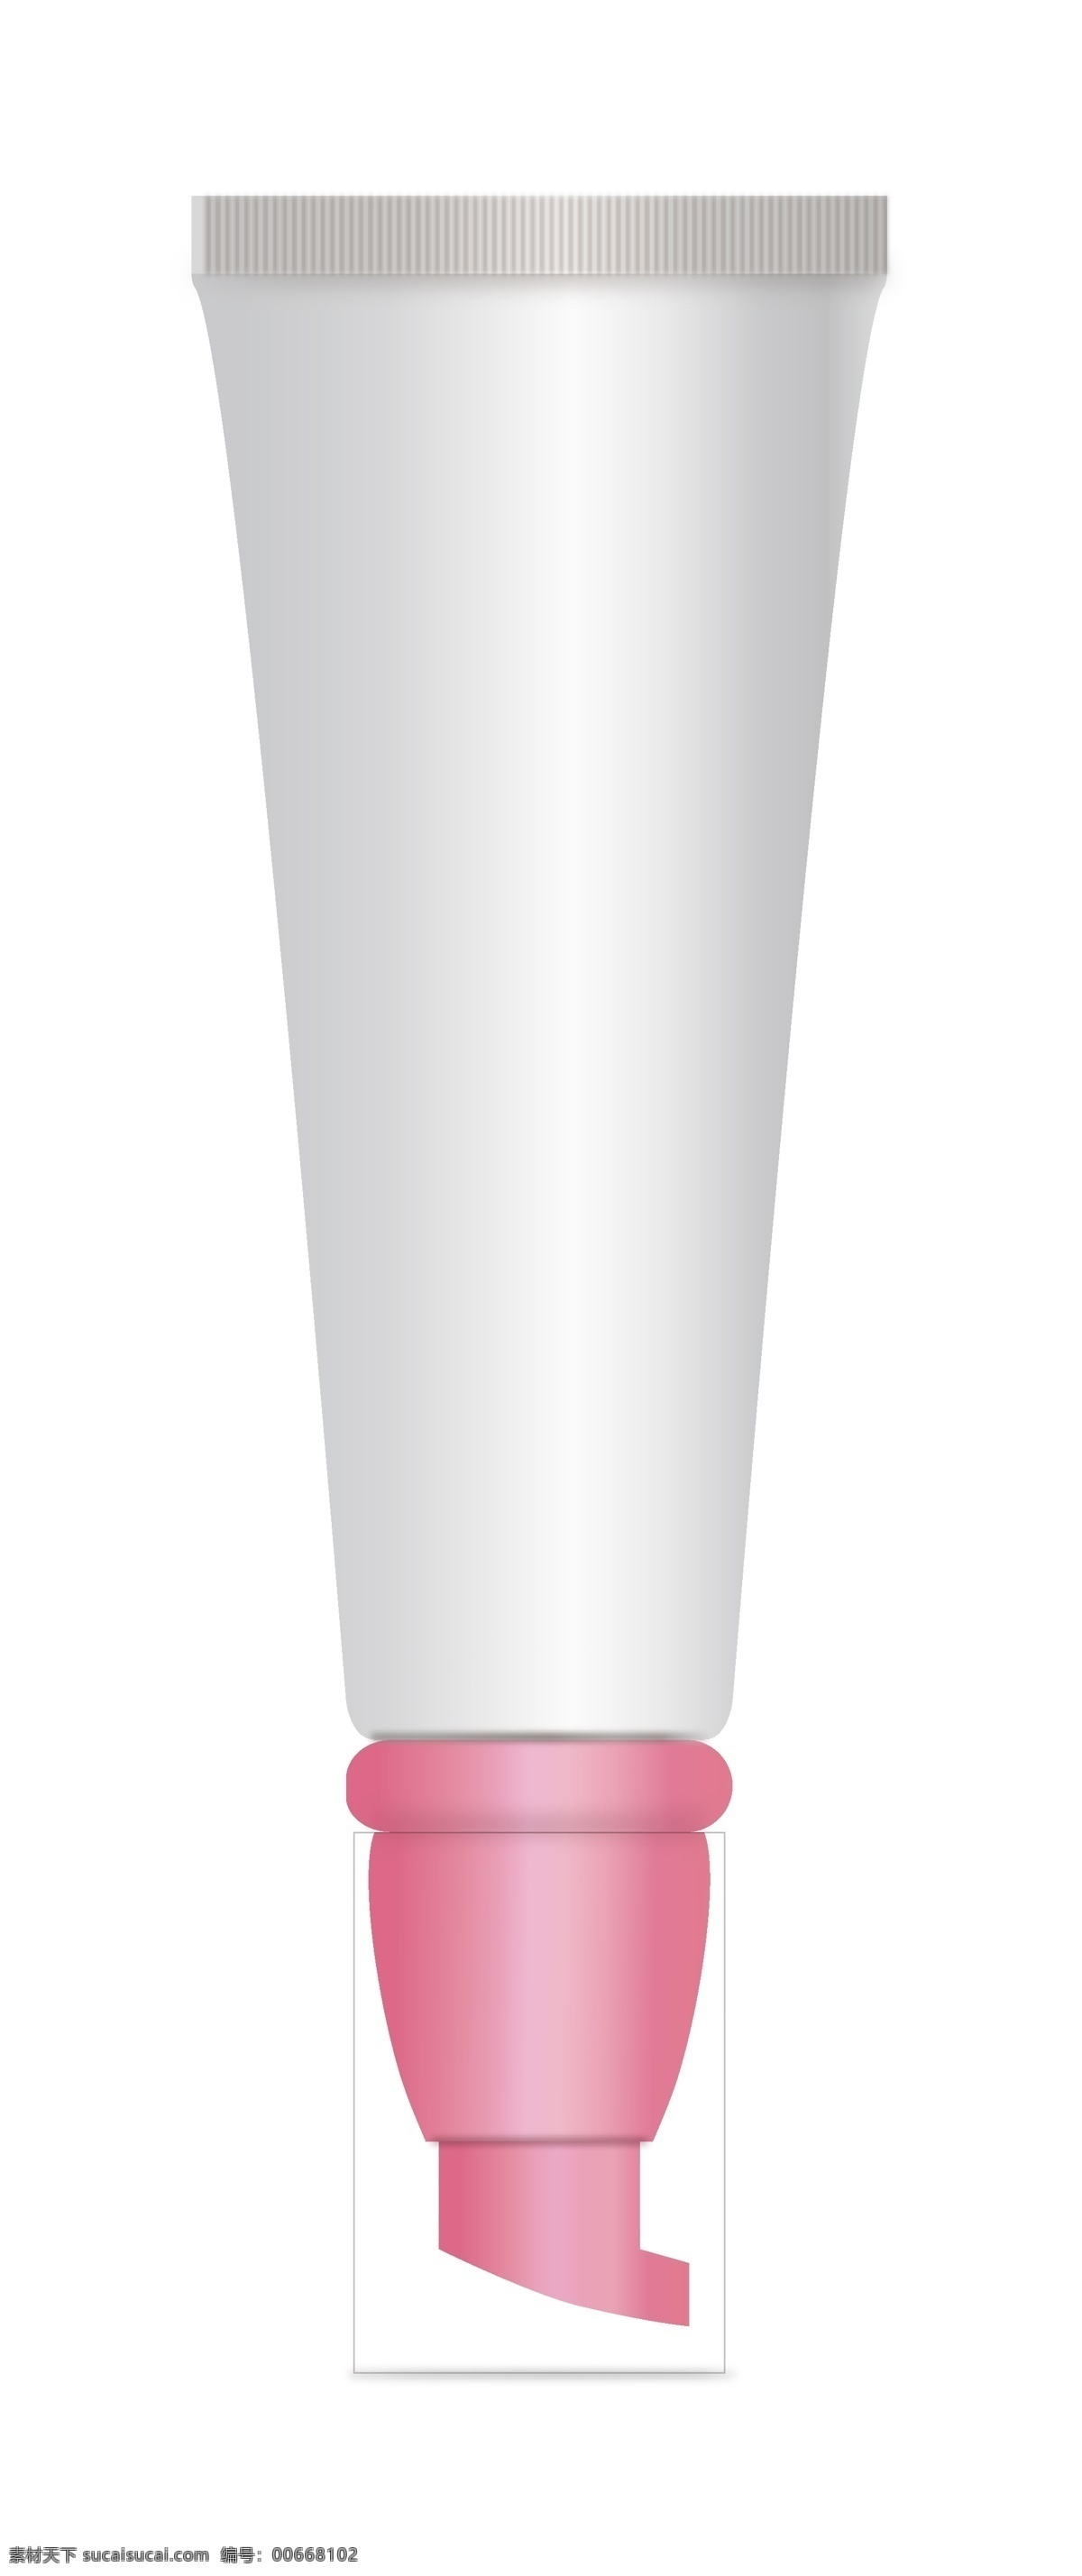 bb 霜 软管 包 材 模板 bb霜 包装设计 粉红 护肤品 化妆品 包材 矢量 白 矢量图 日常生活